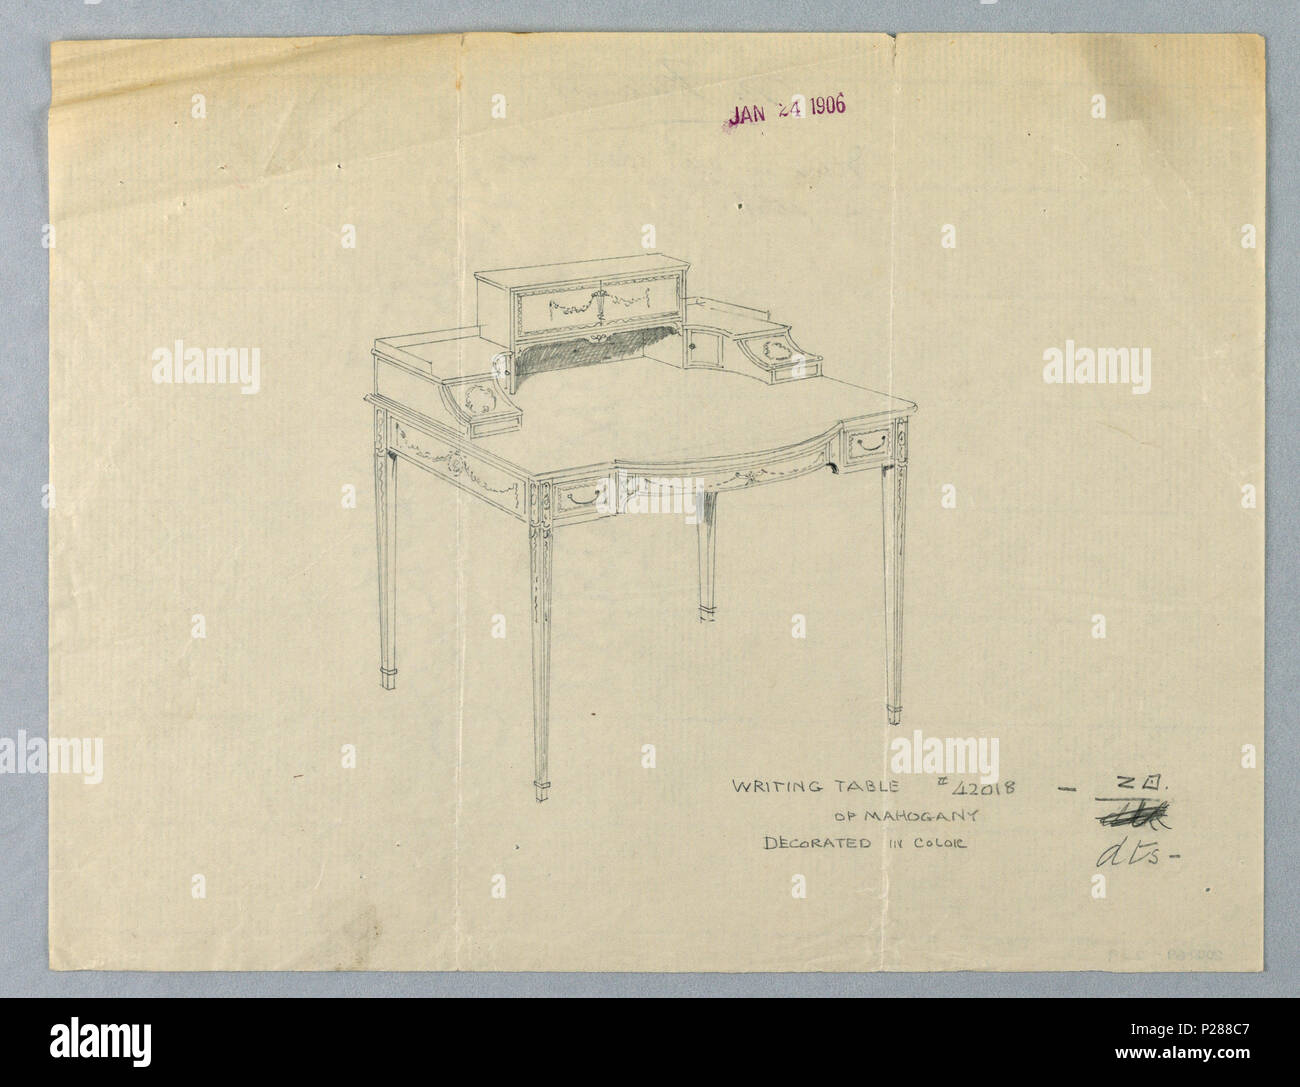 Englisch: Zeichnen, Entwurf für das Schreiben Tabelle #42018 von Mahagoni,  dekoriert in Farbe, 24. Januar 1906. Englisch: Große rechteckige  Tischplatte mit konvexen zentralen Schublade durch kleine Schublade auf  beiden Seiten flankiert;